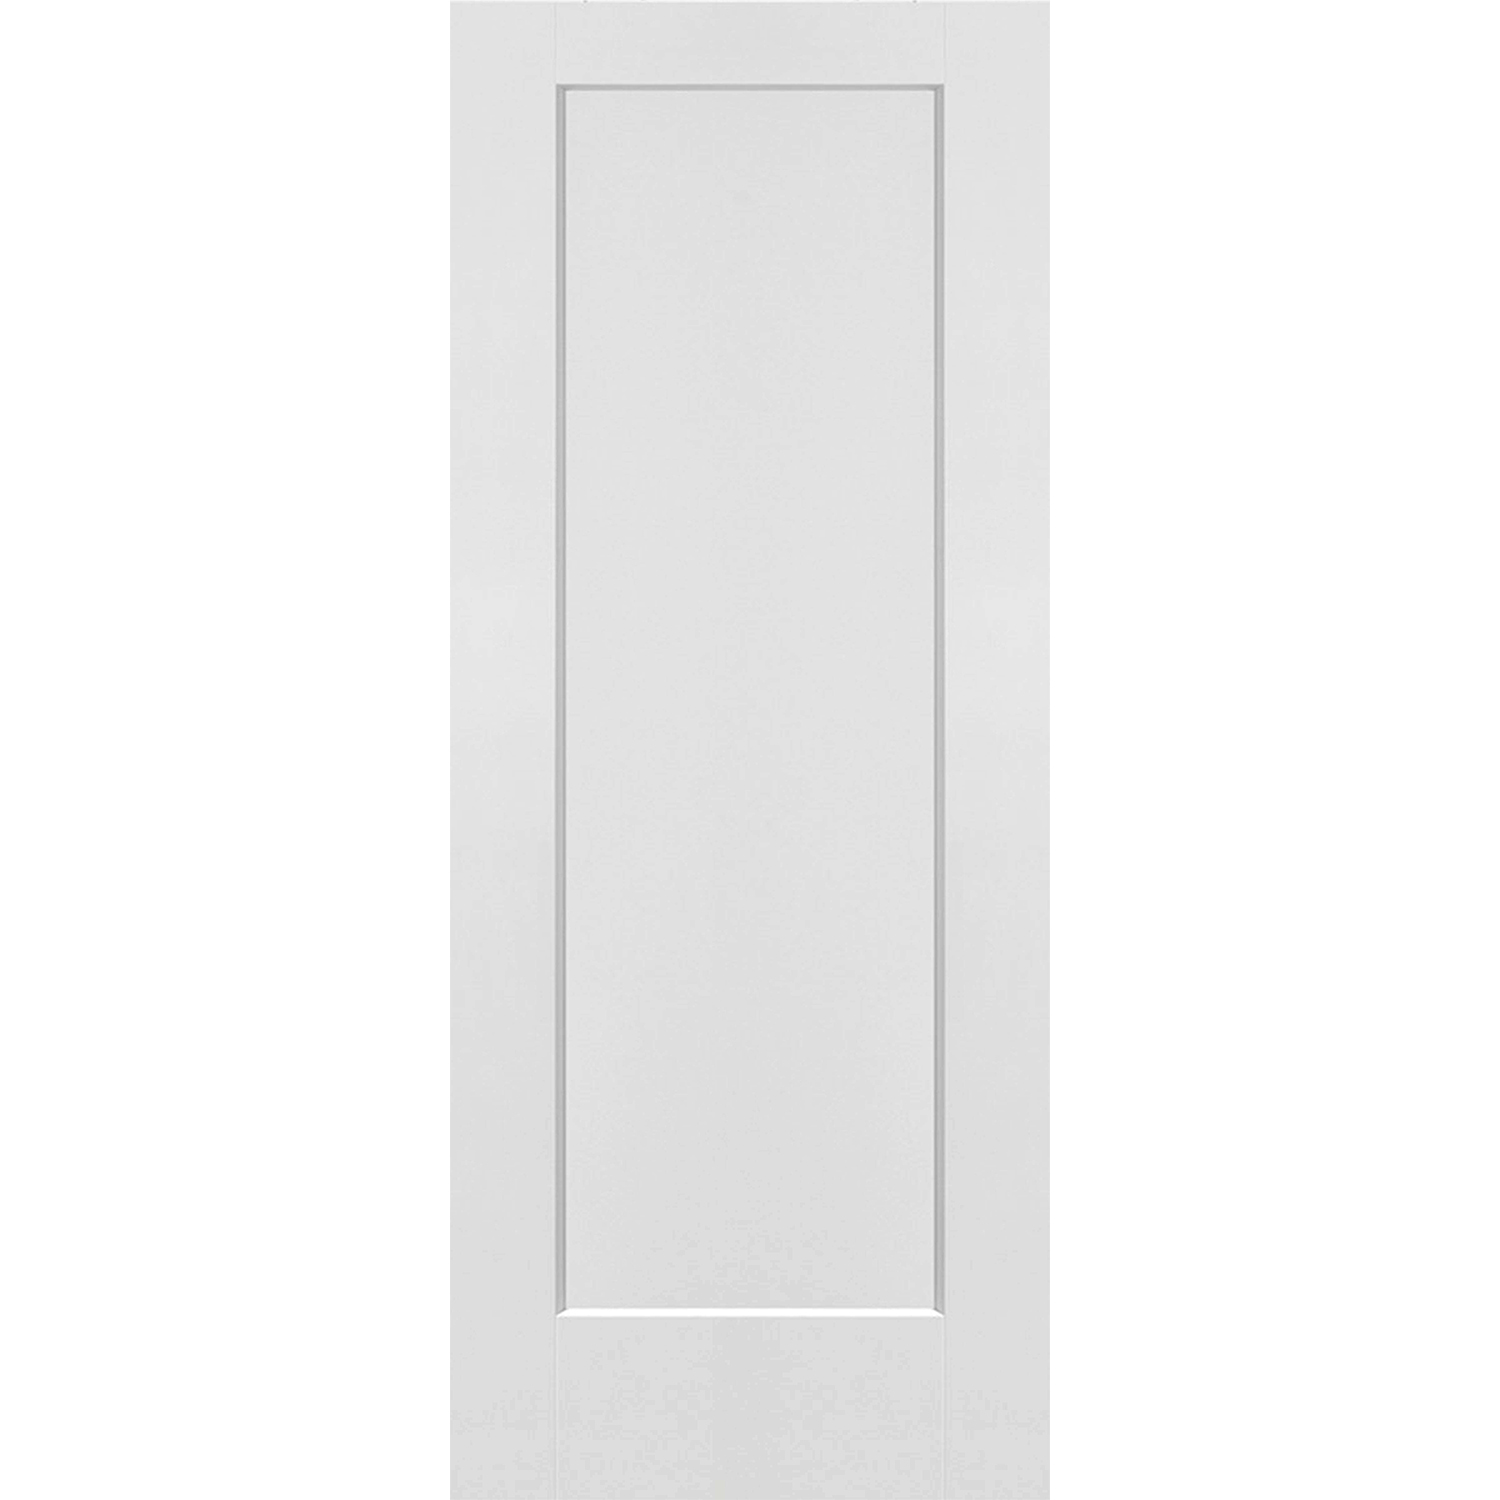 1 Panel Interior Door Shaker Style (Hollow Core) - 32 x 80 - D1HS32